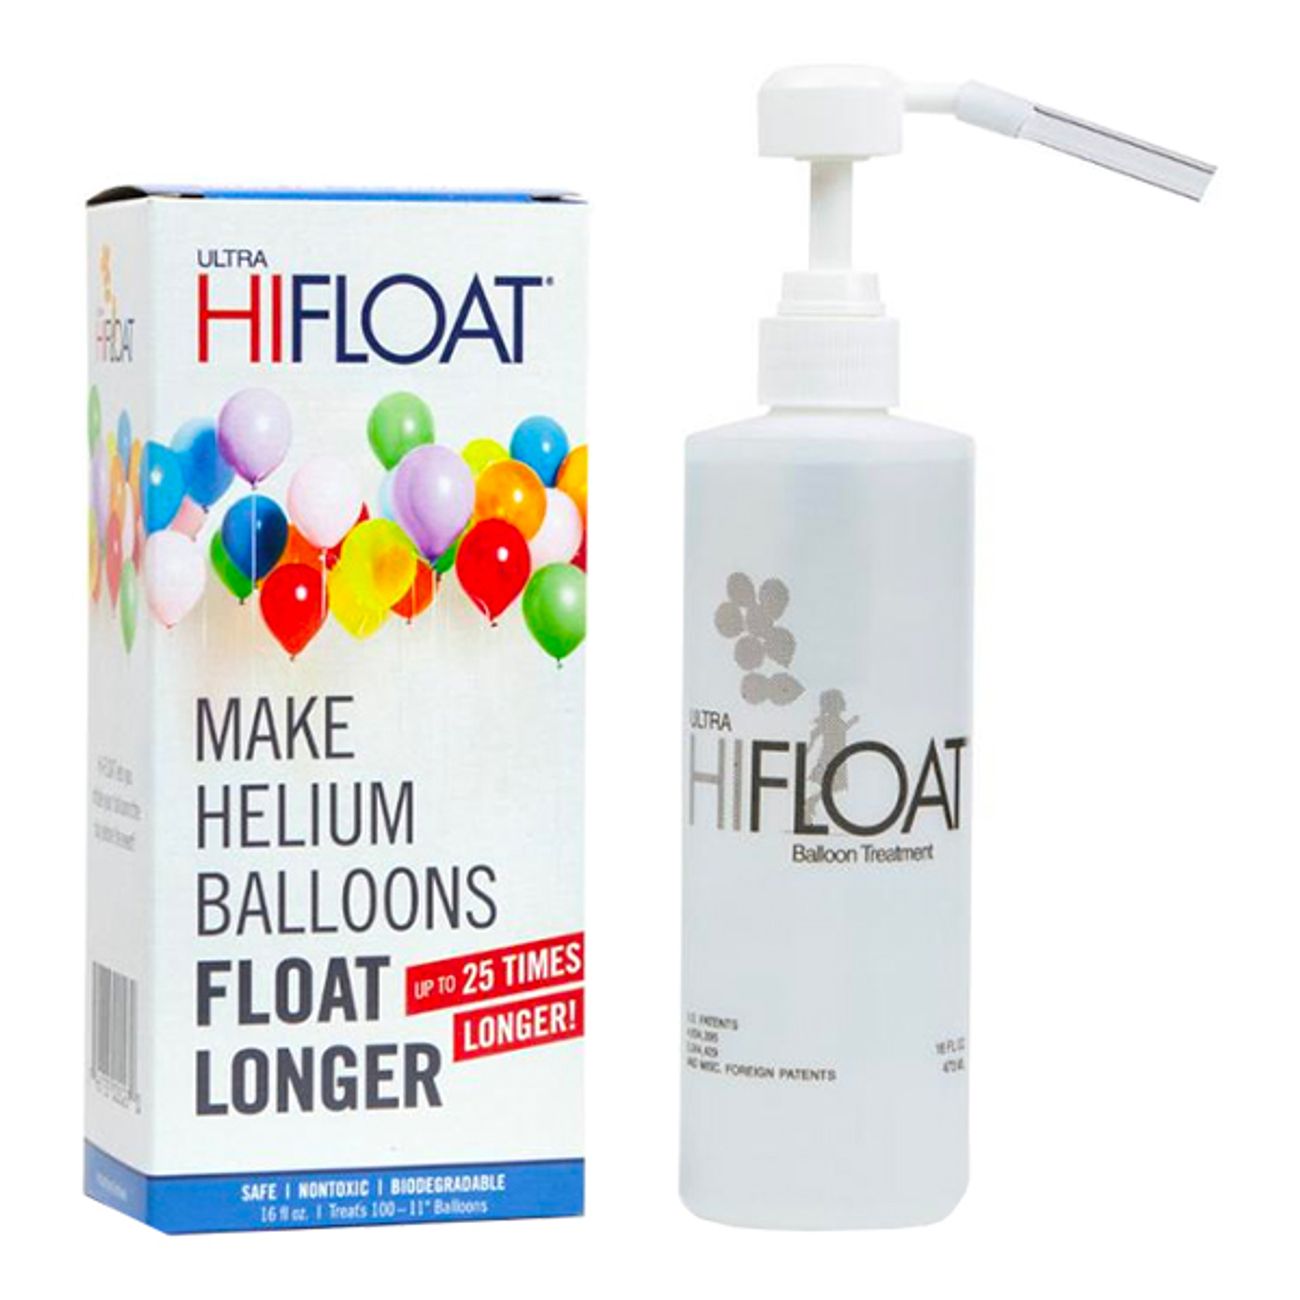 ultra-hi-float-kit-1